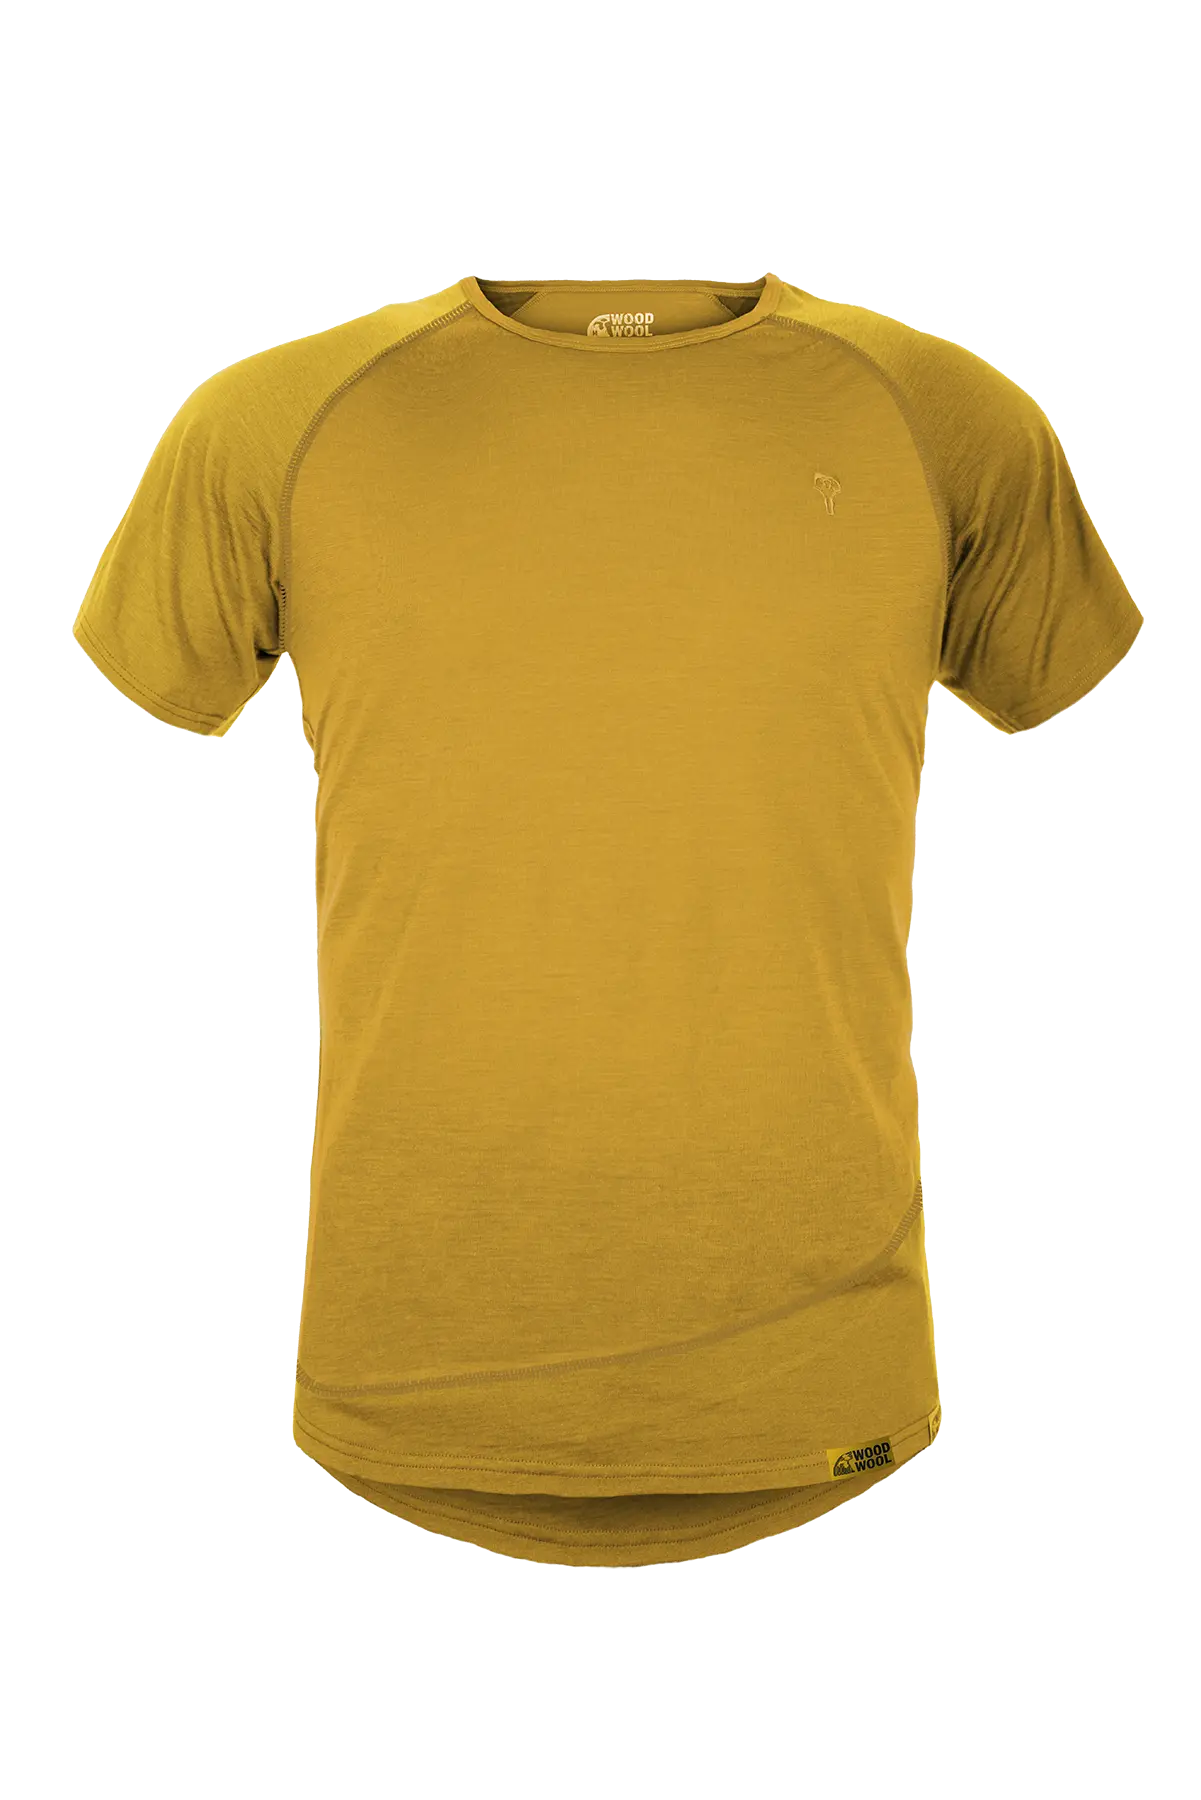 gruezi-bag-woodwool-t-shirt-mr-pike-2750-2754-2750-6002-daisy-daze-yellow-amainfrei Kopie